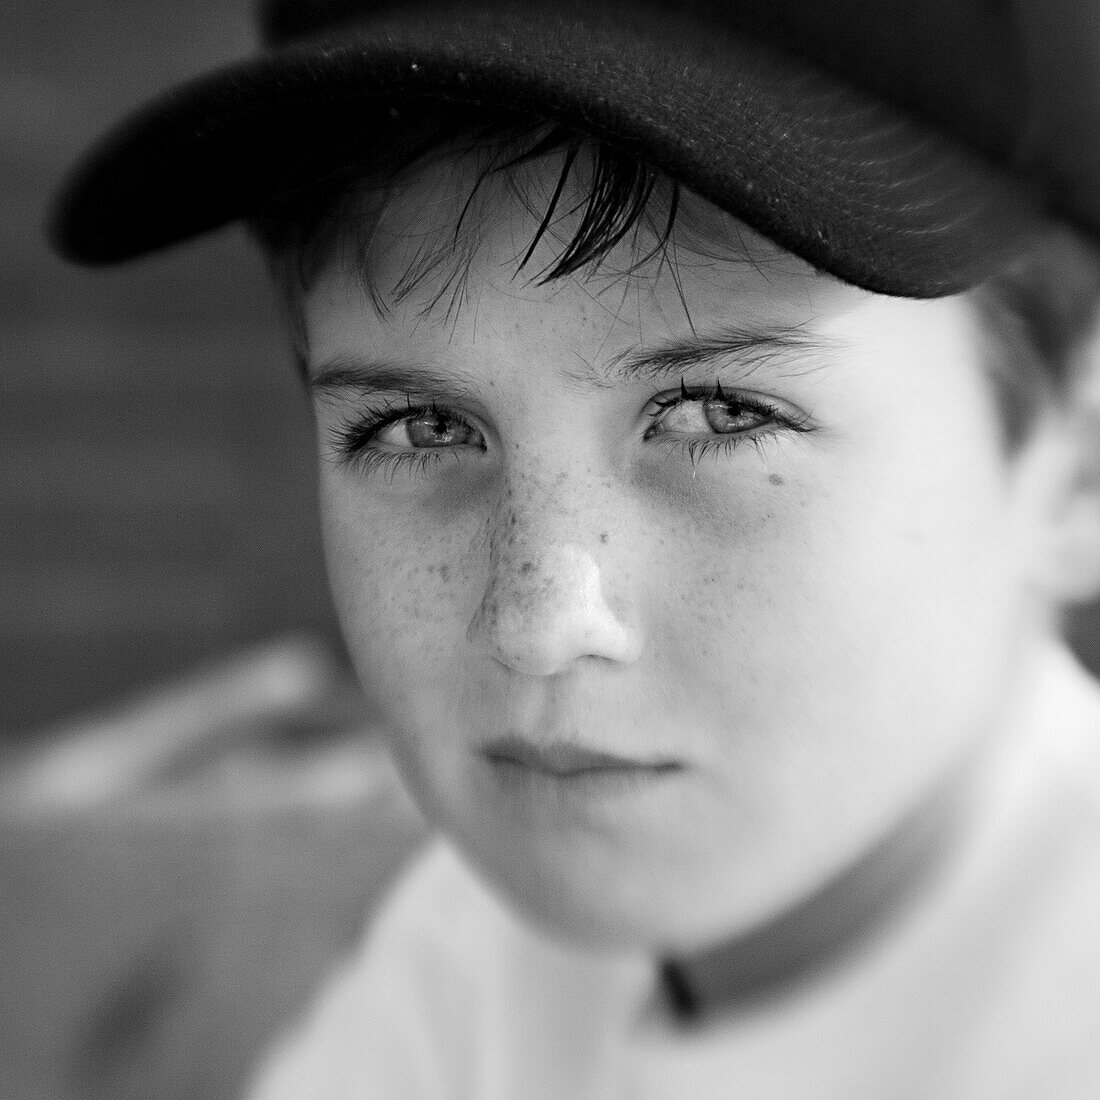 Junge mit einer Kappe blickt ernst in die Kamera (Schwarzweißaufnahme unter Nutzung von Lensbaby-Technik), Borden, Western Australia, Australien